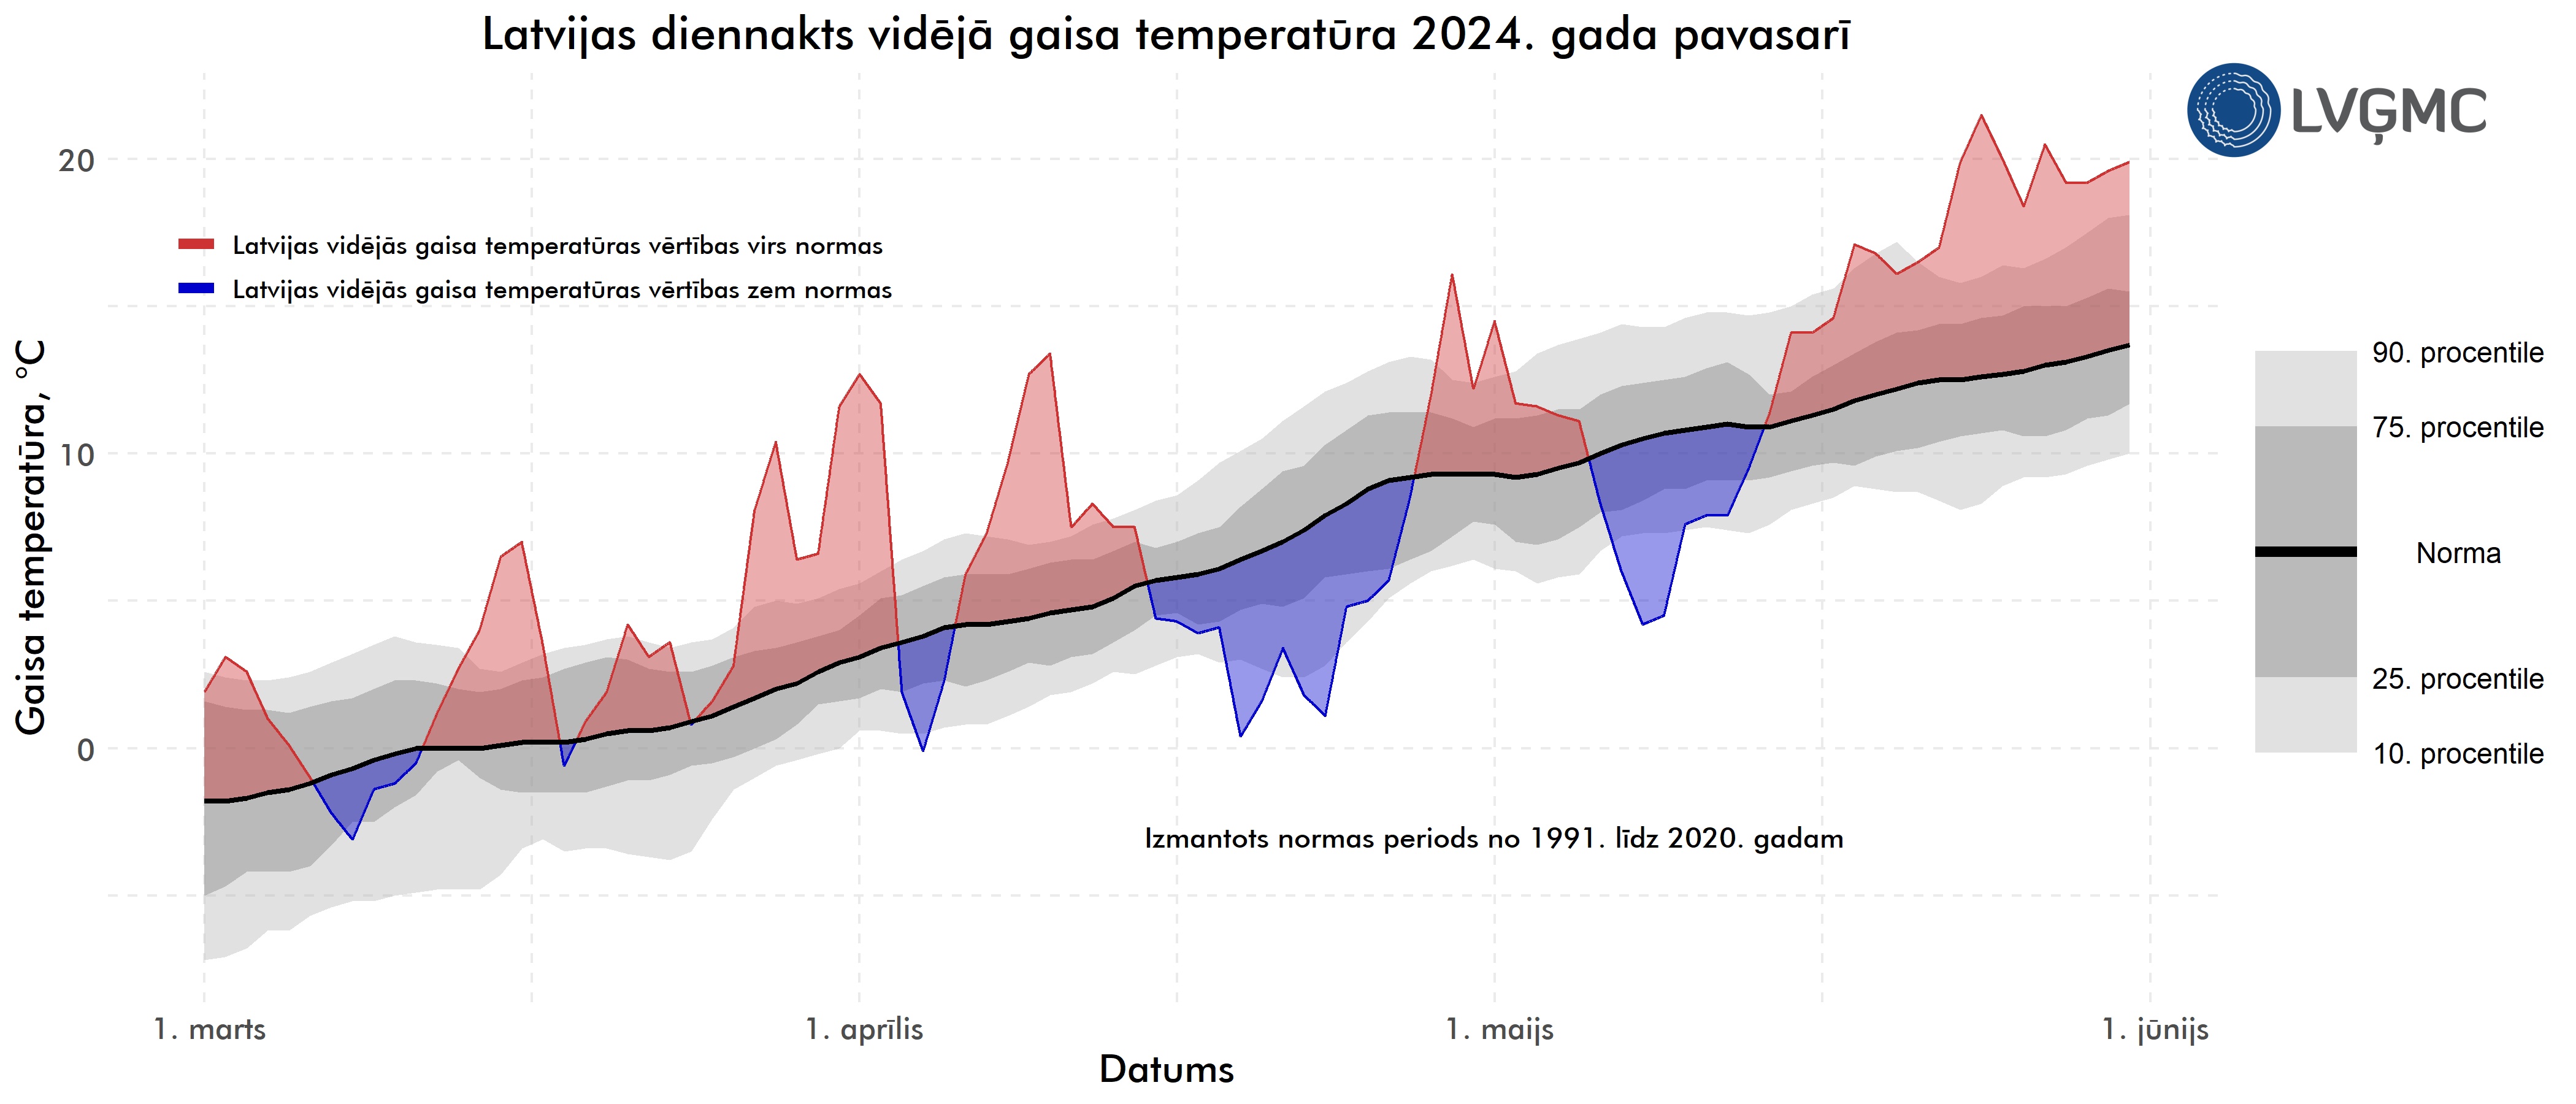 Latvijas diennakts vidējā gaisa temperatūra 2024. gada pavasarī, °C